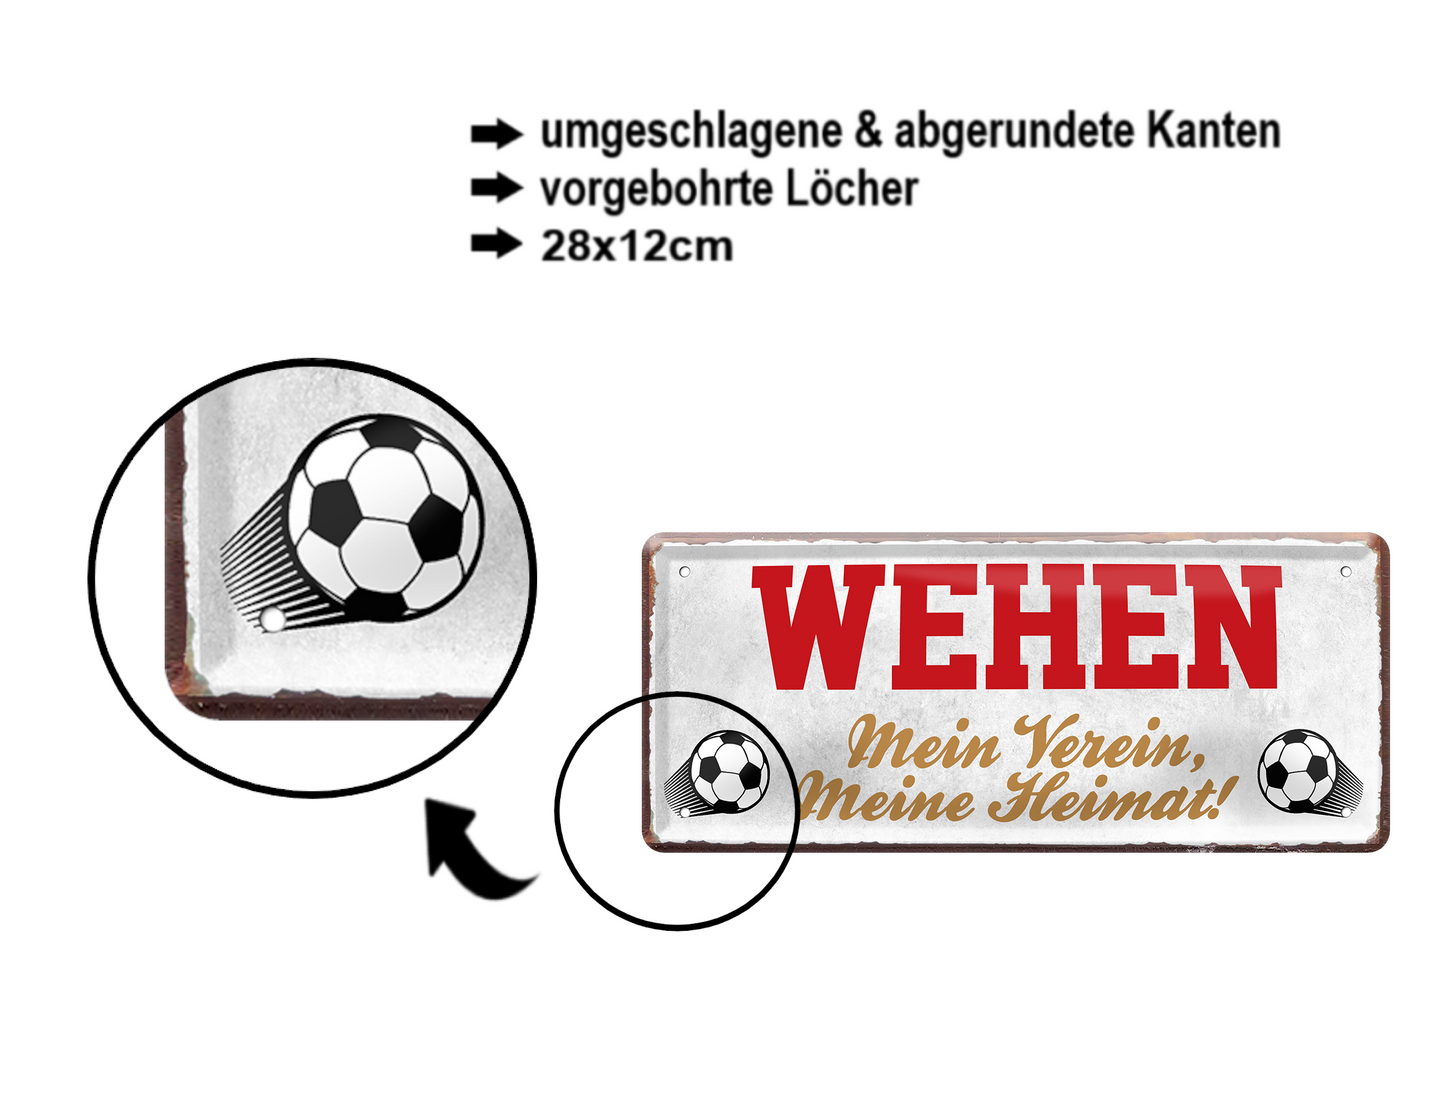 Blechschild ''Wehen Mein Verein, meine Heimat'' 28x12cm